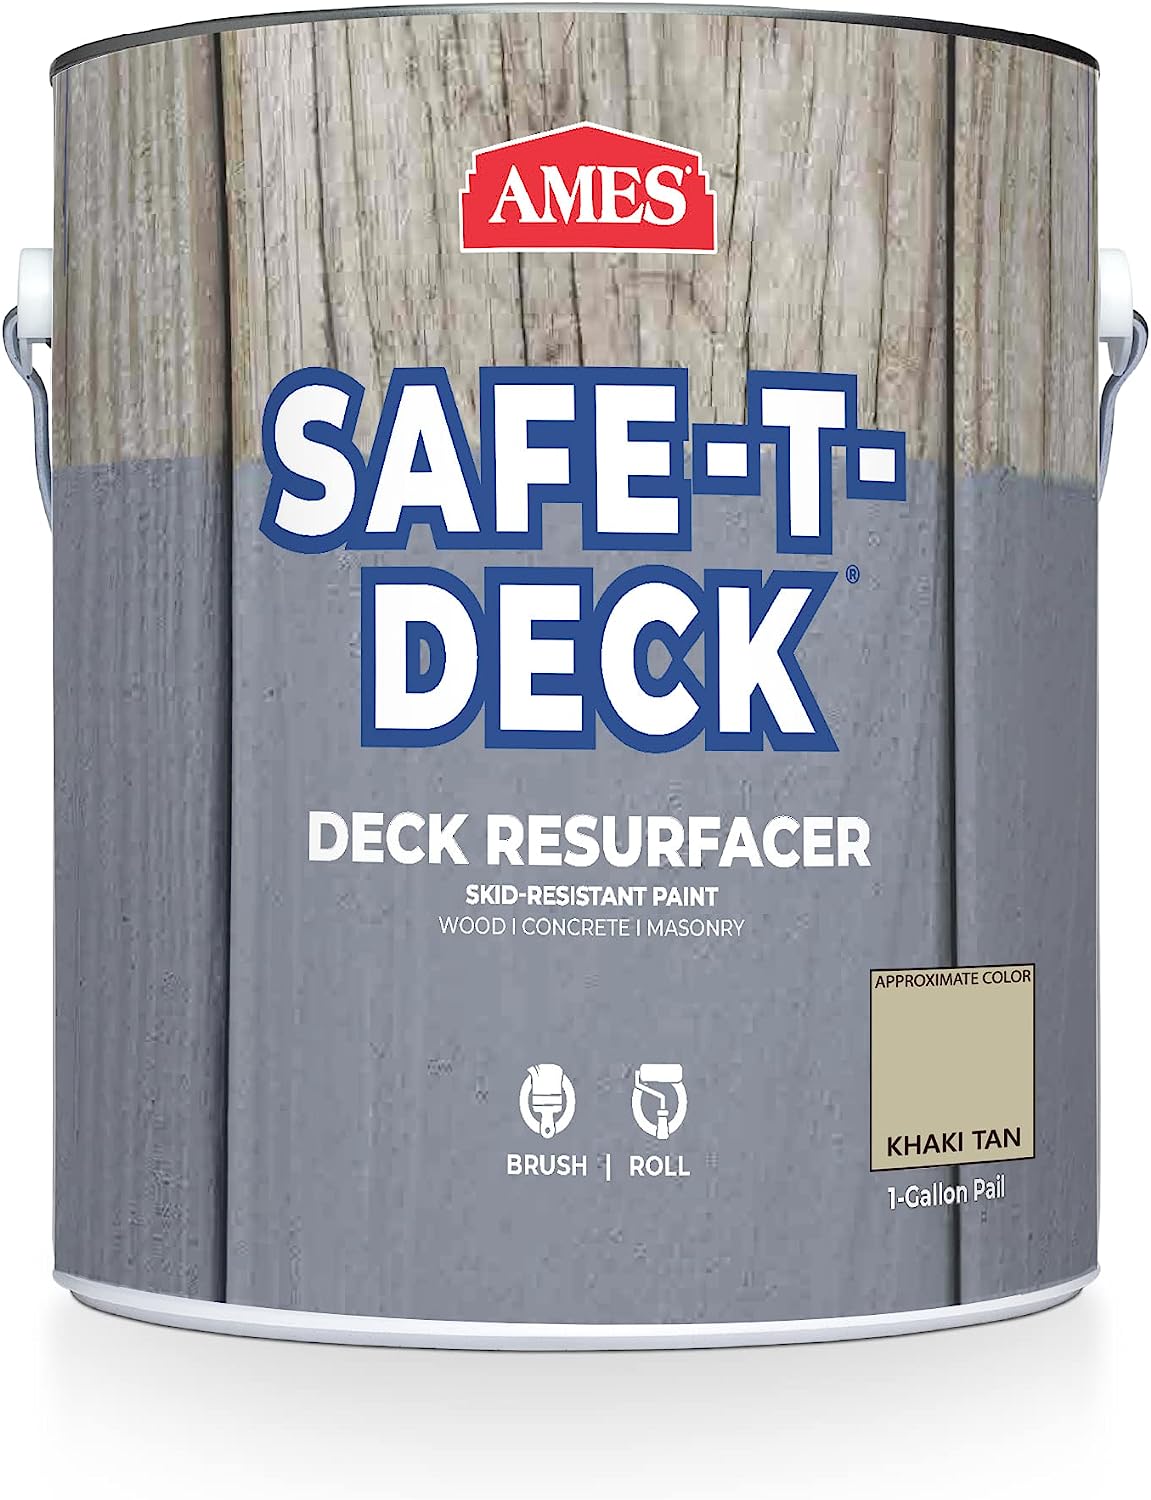 textured deck paint product comparison